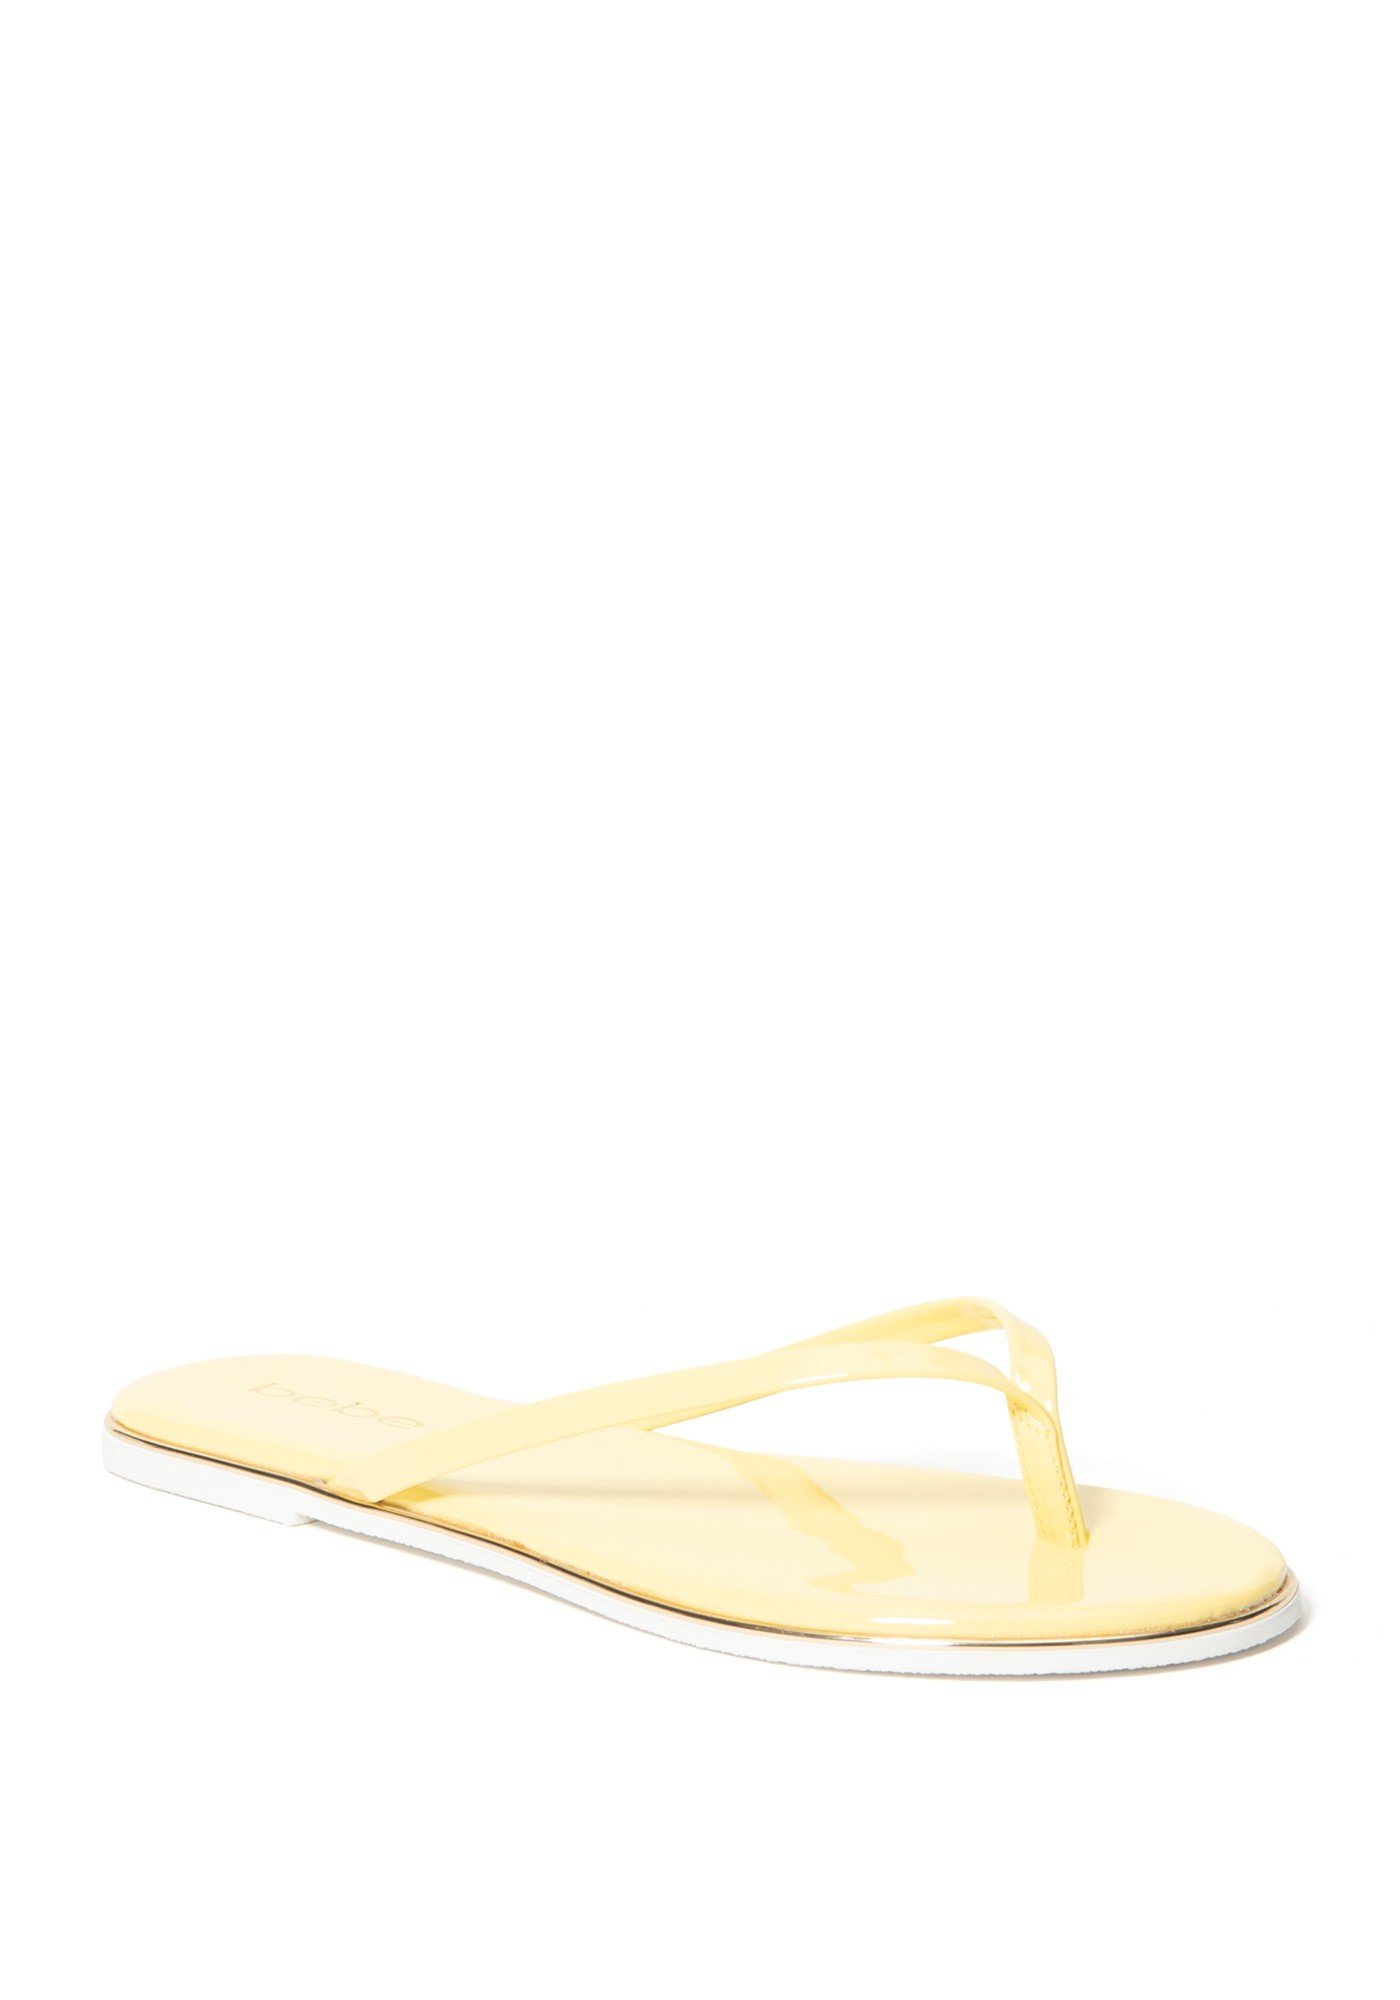 Bebe Women's Ilistra-W Flip Flops, Size 9.5 in Yellow Synthetic